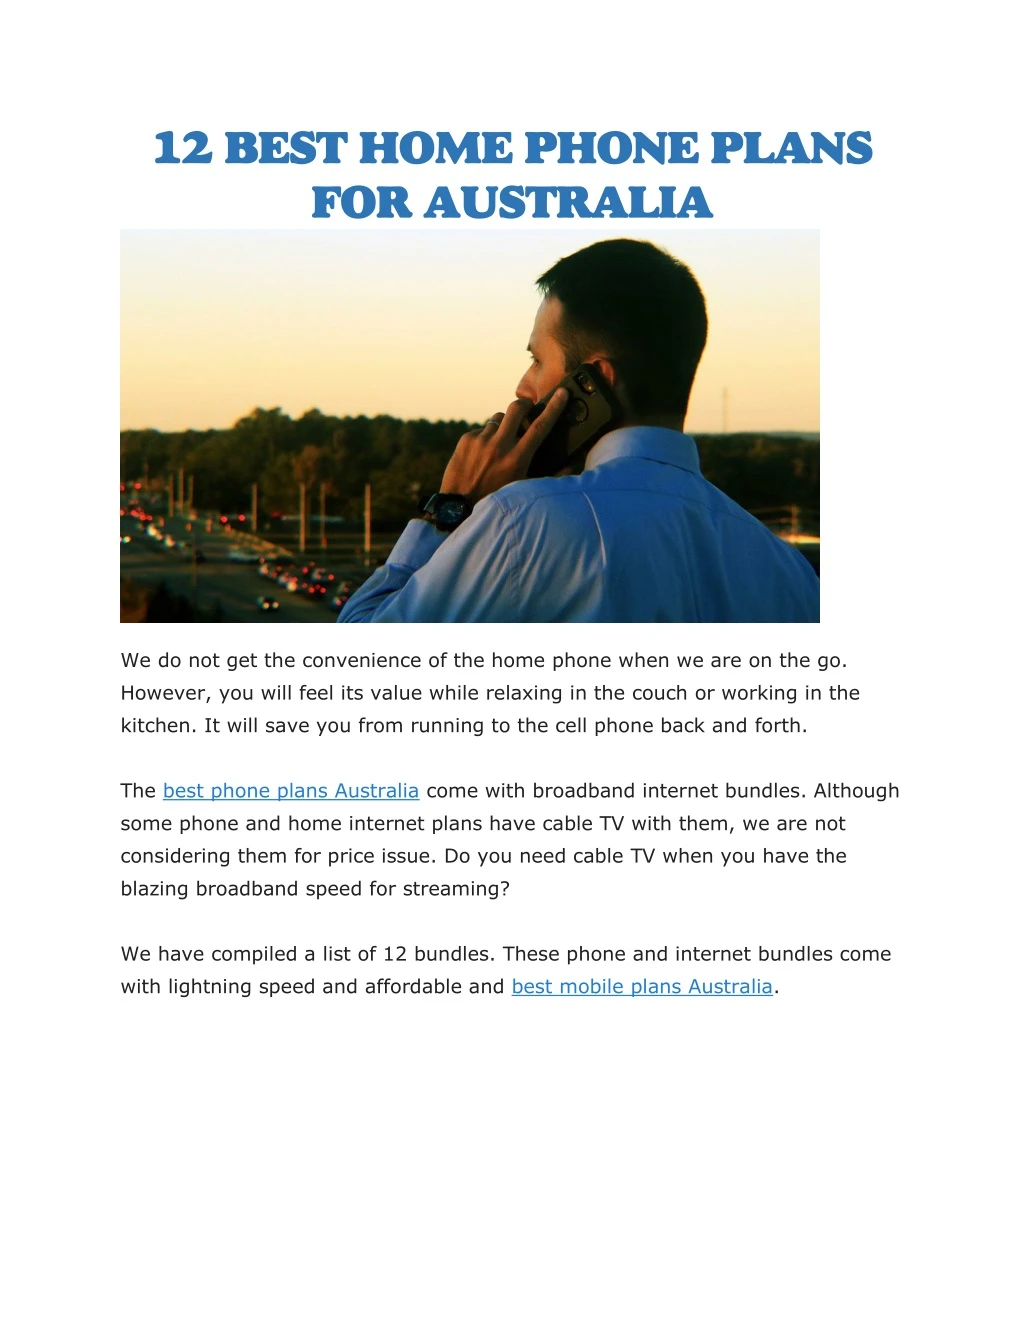 12 best home phone plans for australia